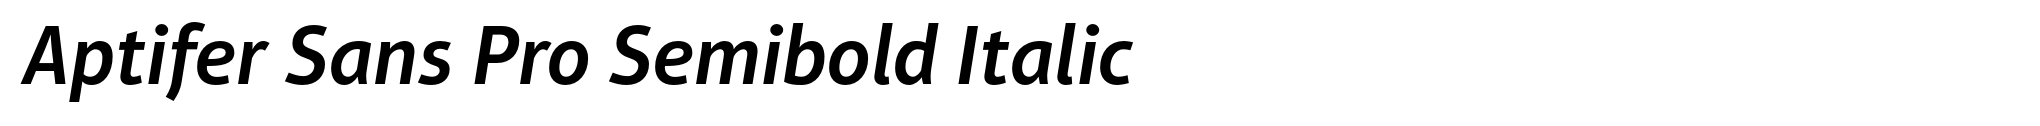 Aptifer Sans Pro Semibold Italic image